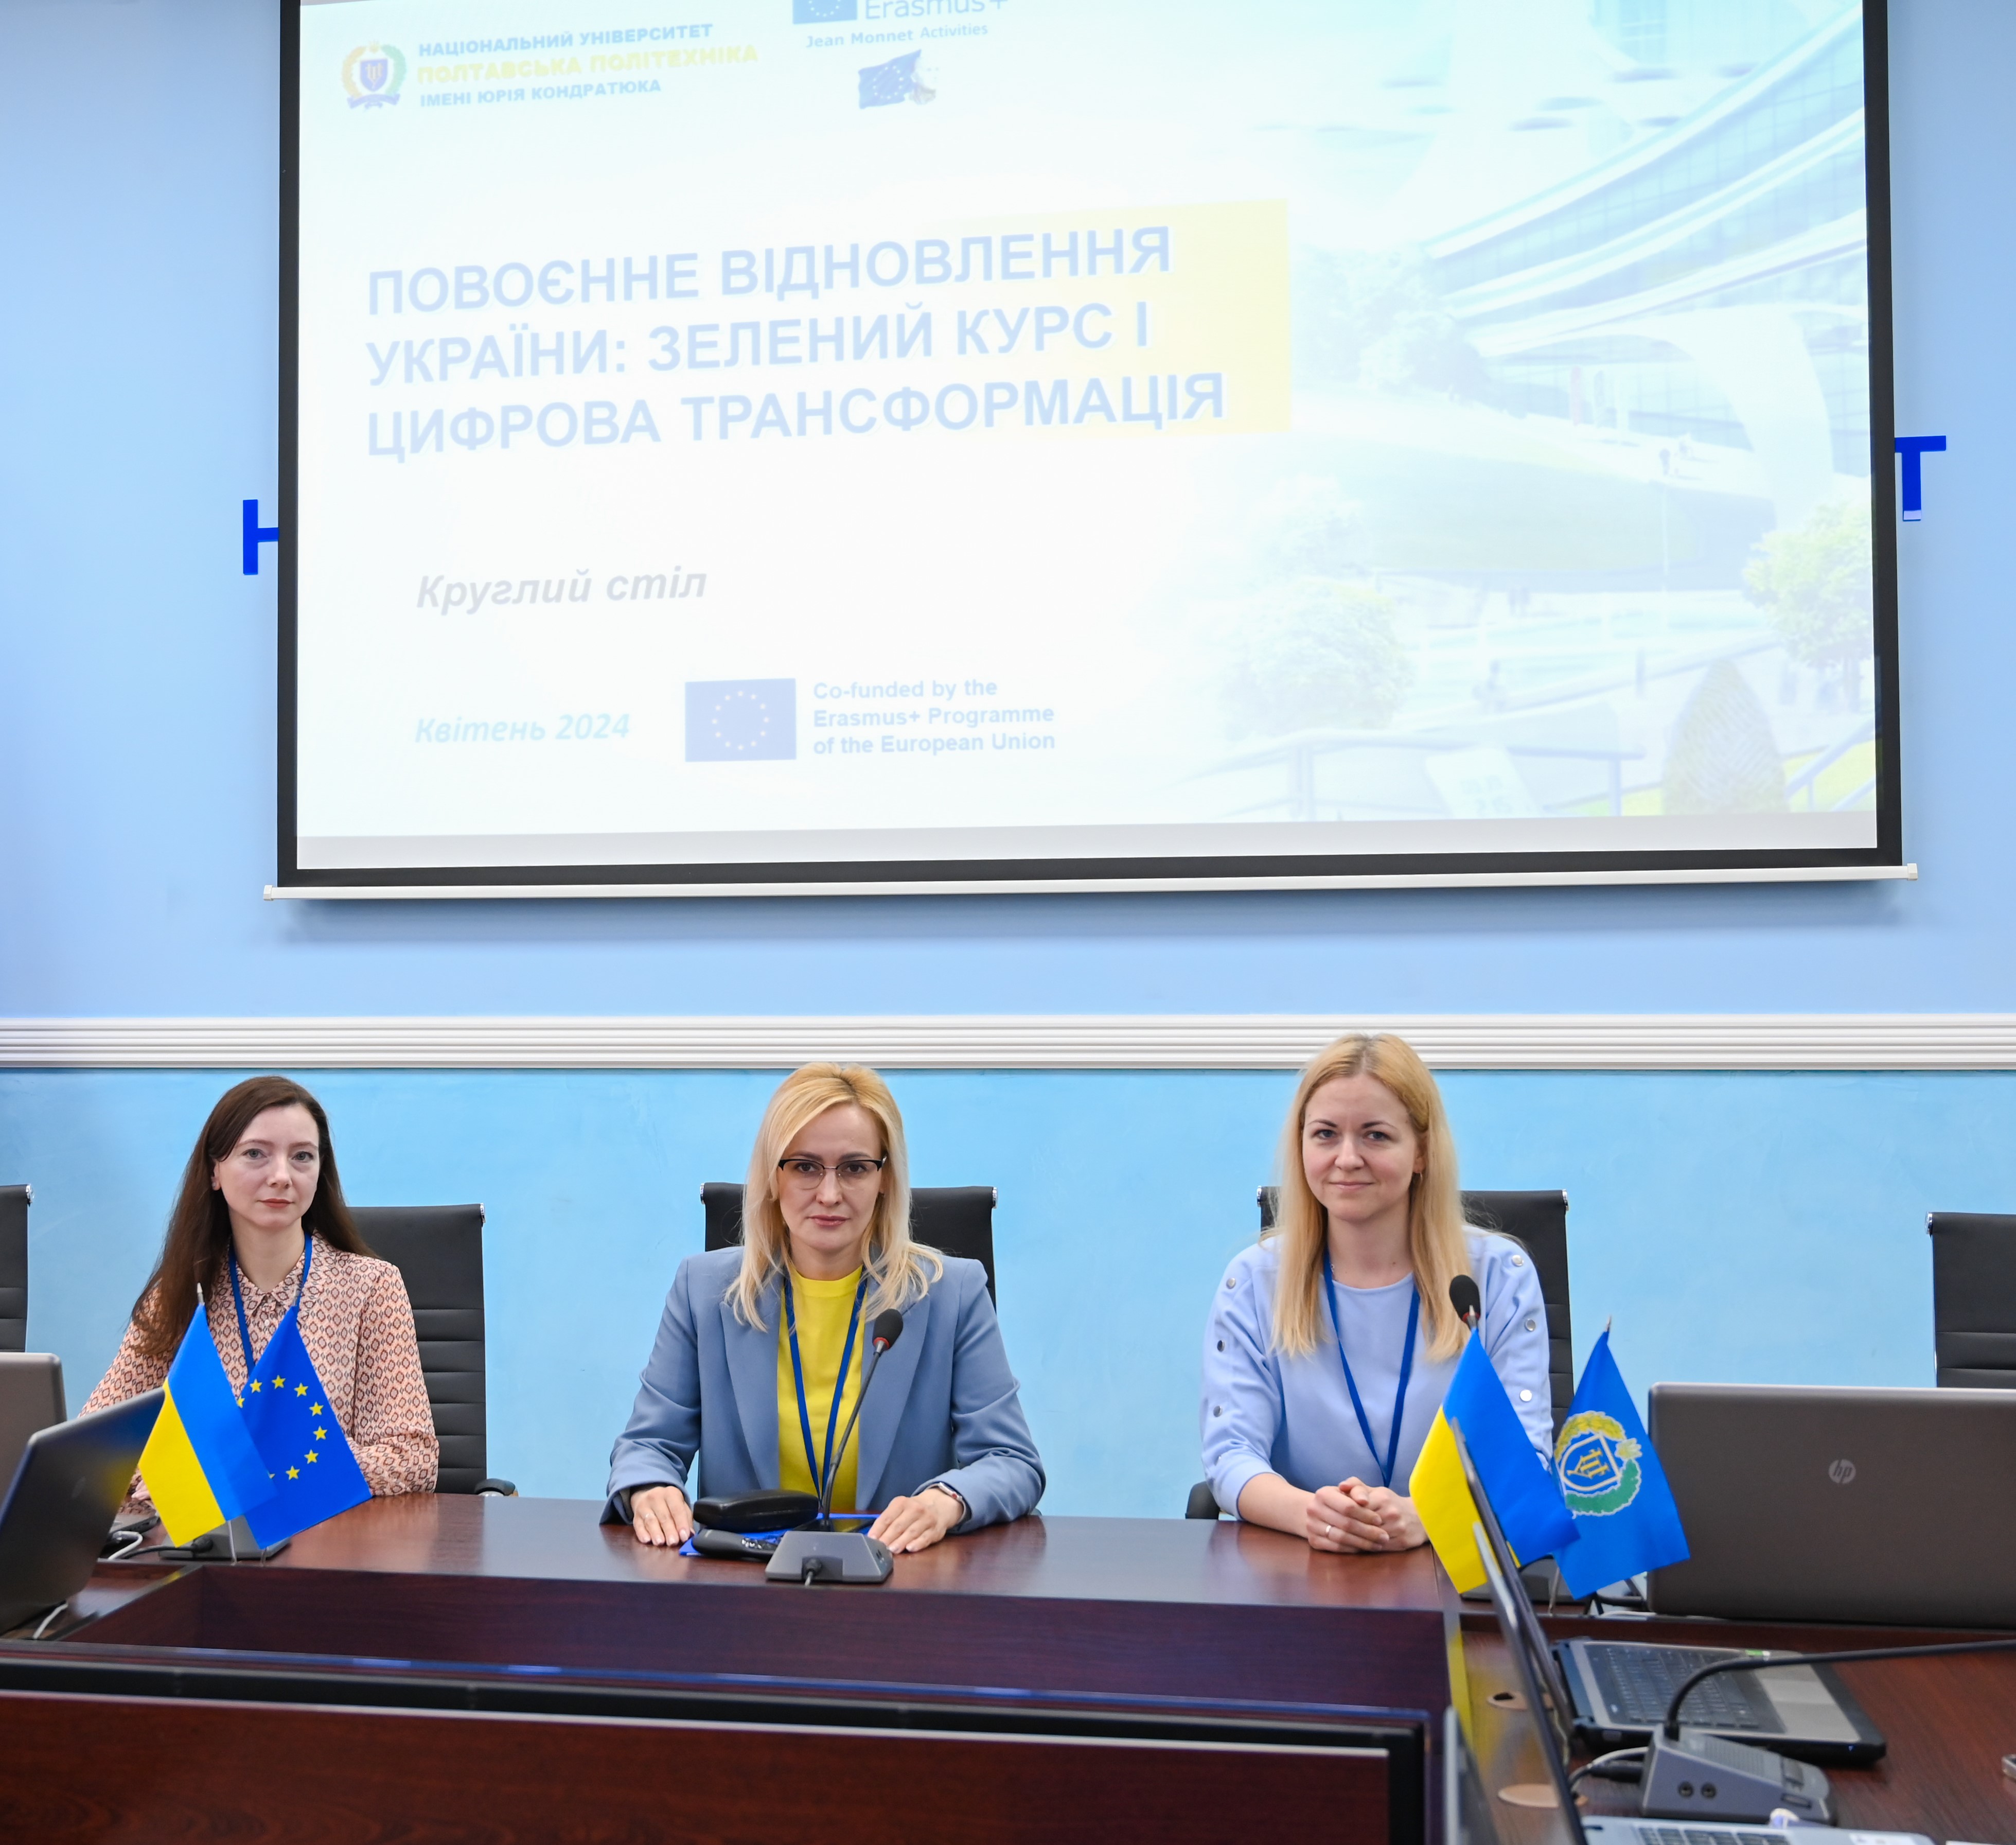 Науковці та студенти обговорили розвиток «зеленої економіки» та цифровізації для повоєнного відновлення України 